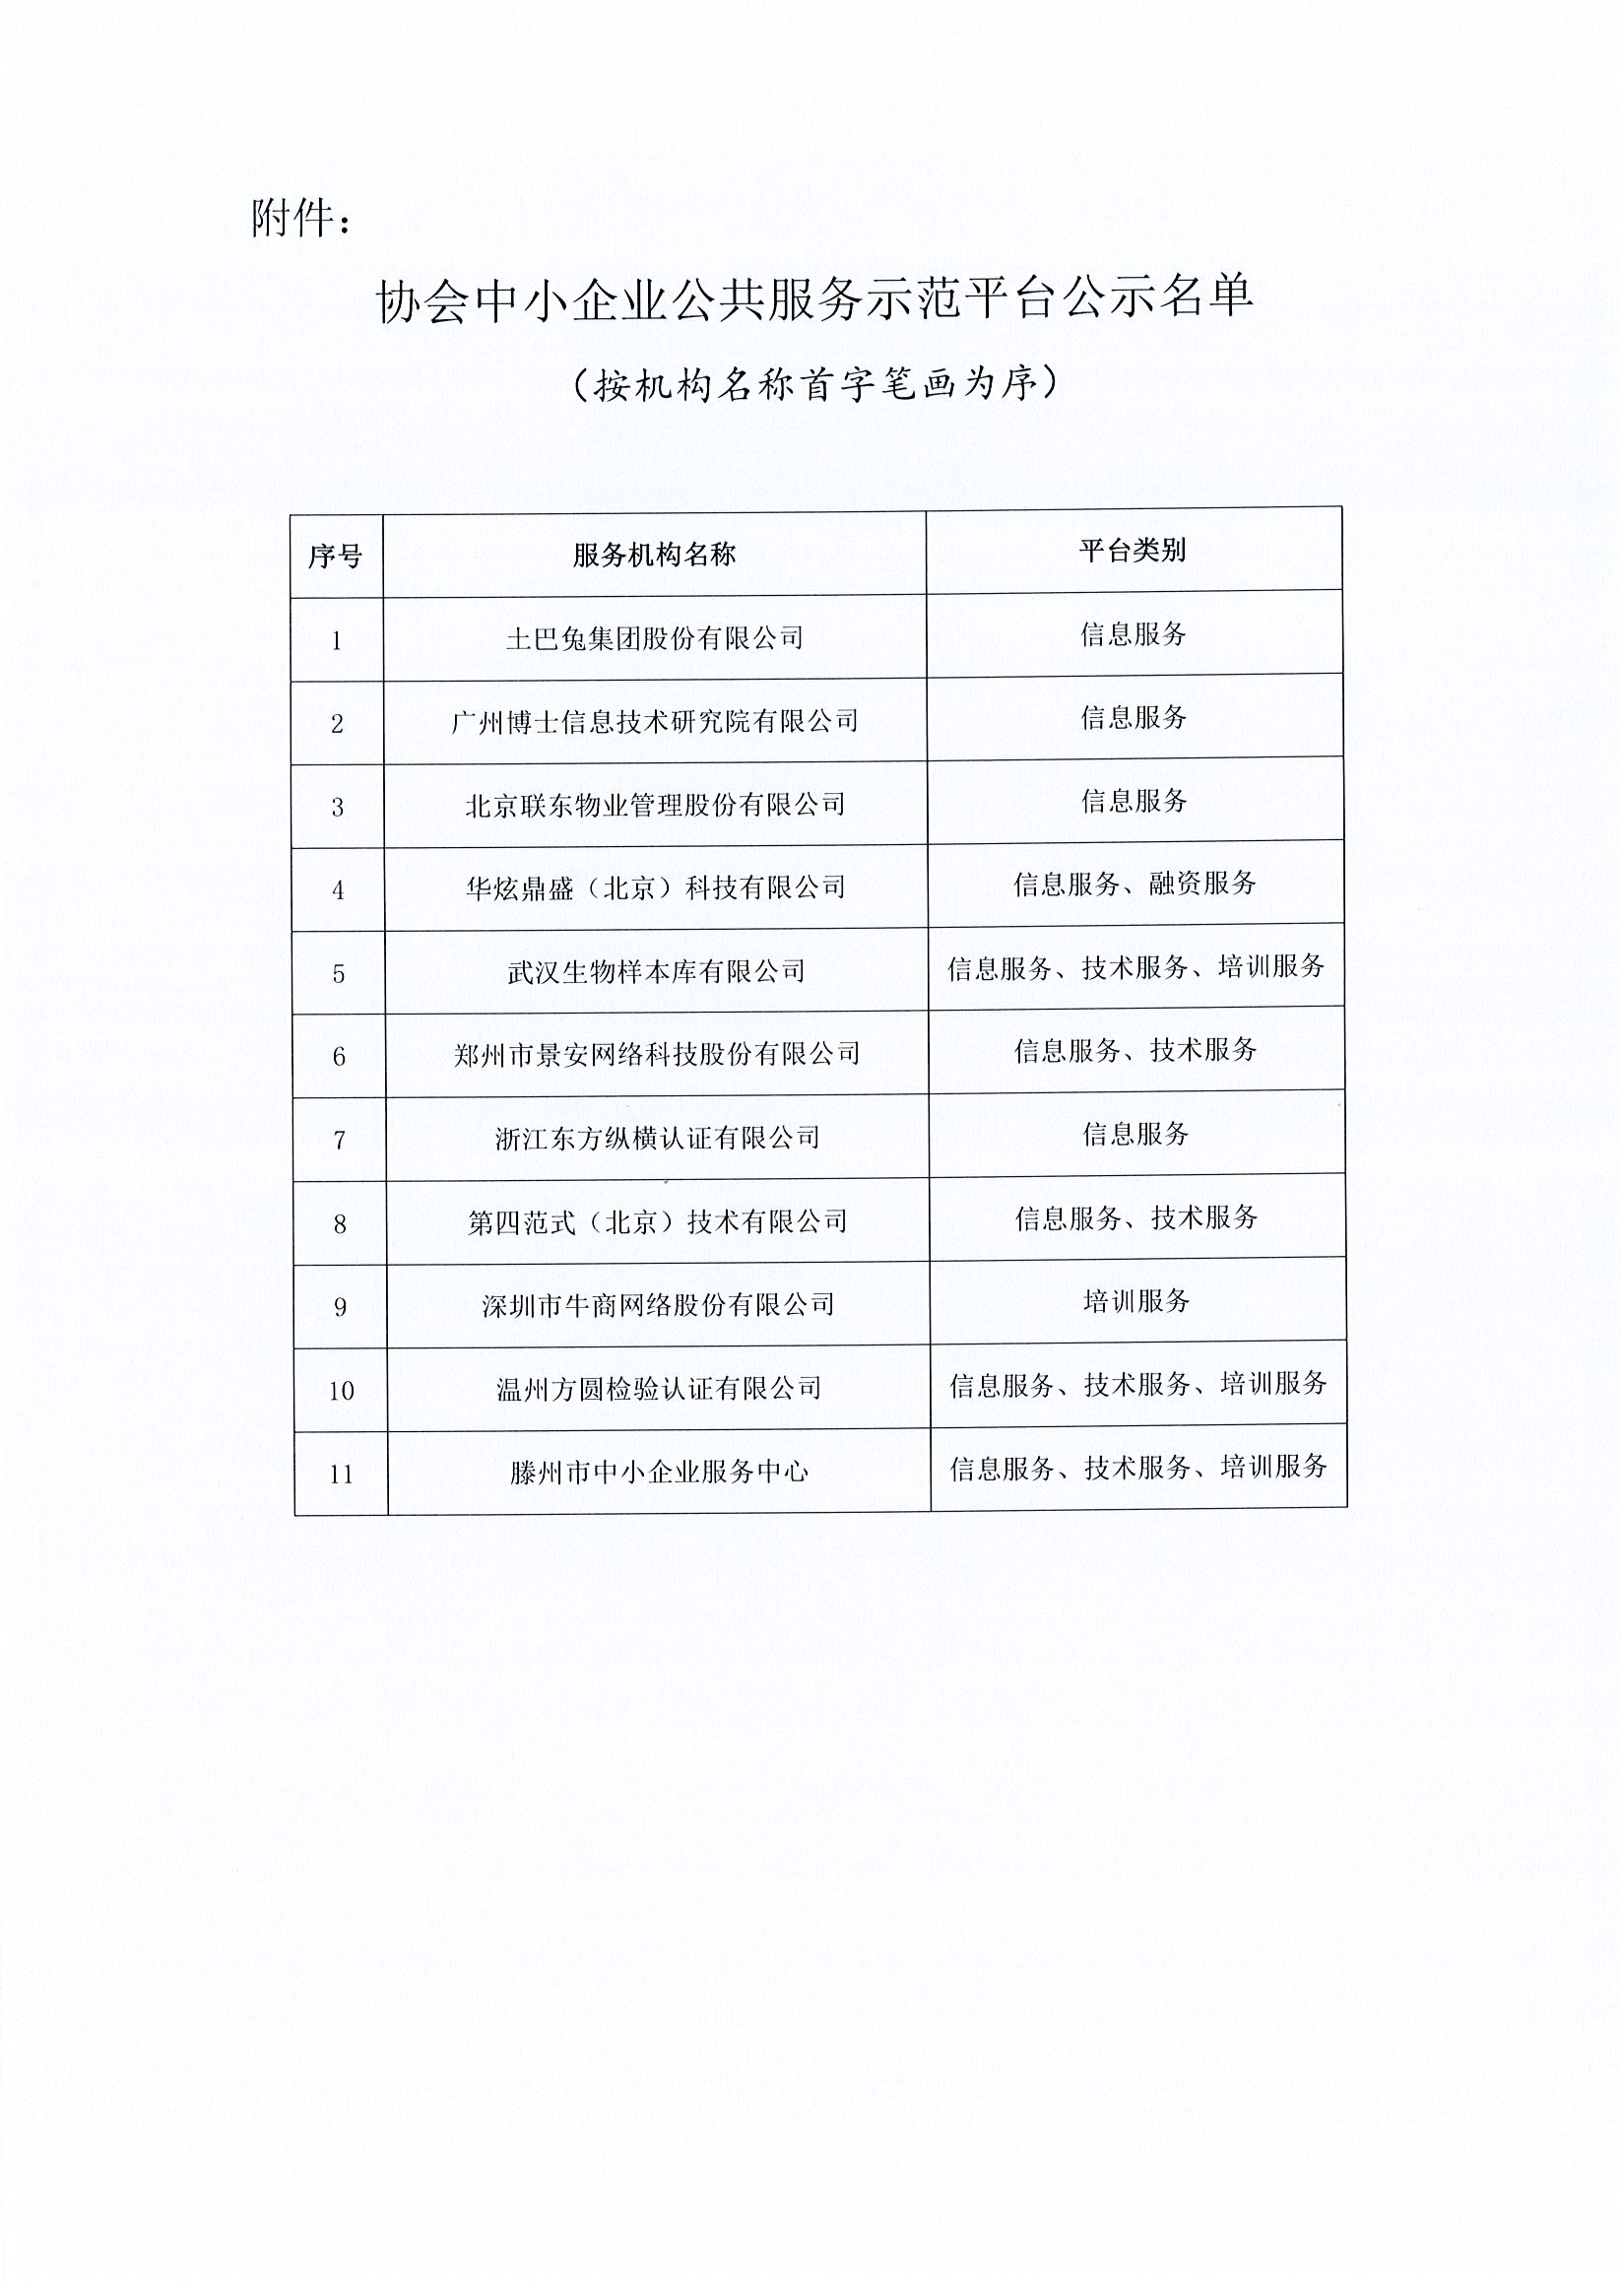 中国中小企业国际合作协会关于2022年中小企业公共服务示范平台认定名单的公示_页面_2.jpg